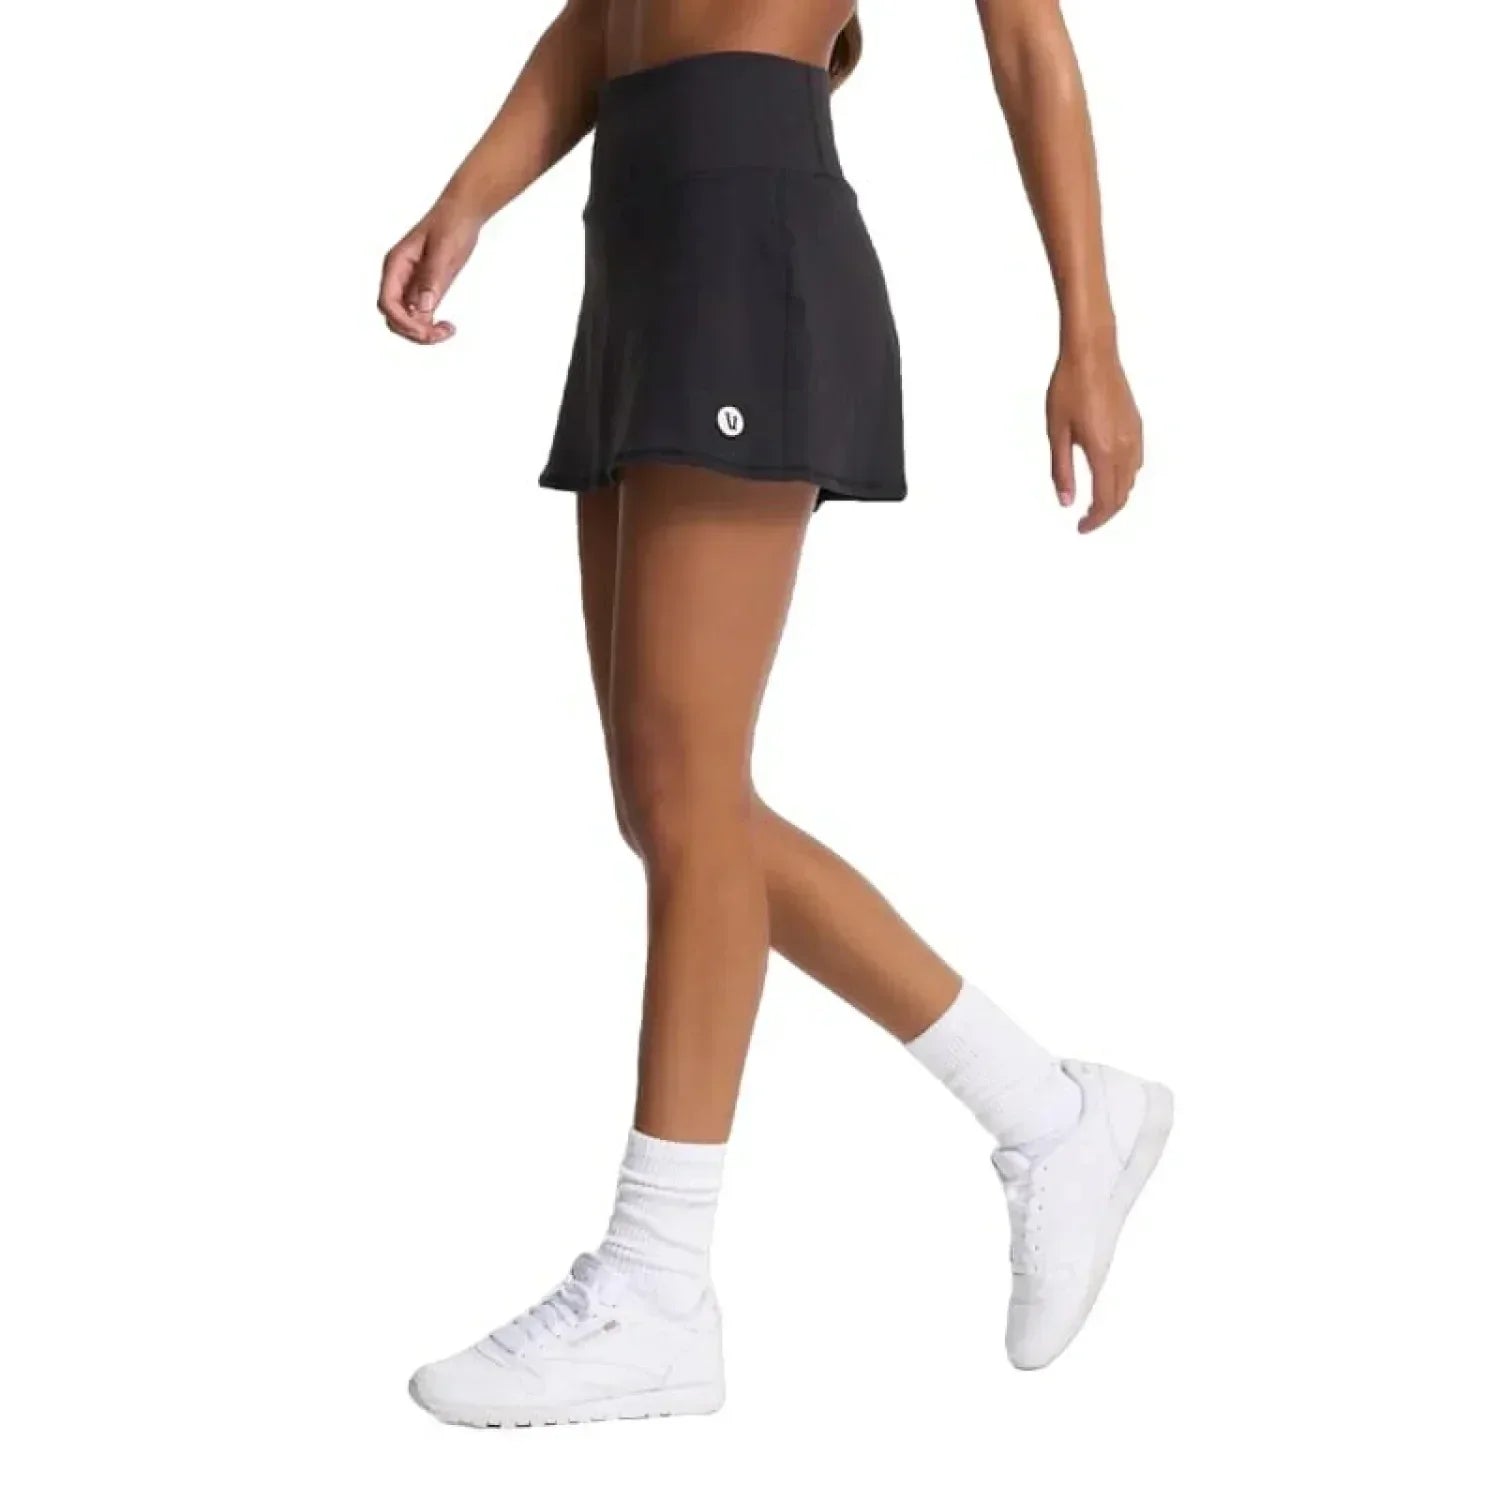 Vuori 02. WOMENS APPAREL - WOMENS DRESS|SKIRT - WOMENS SKIRT ACTIVE Women's Volley Skirt BLK BLACK